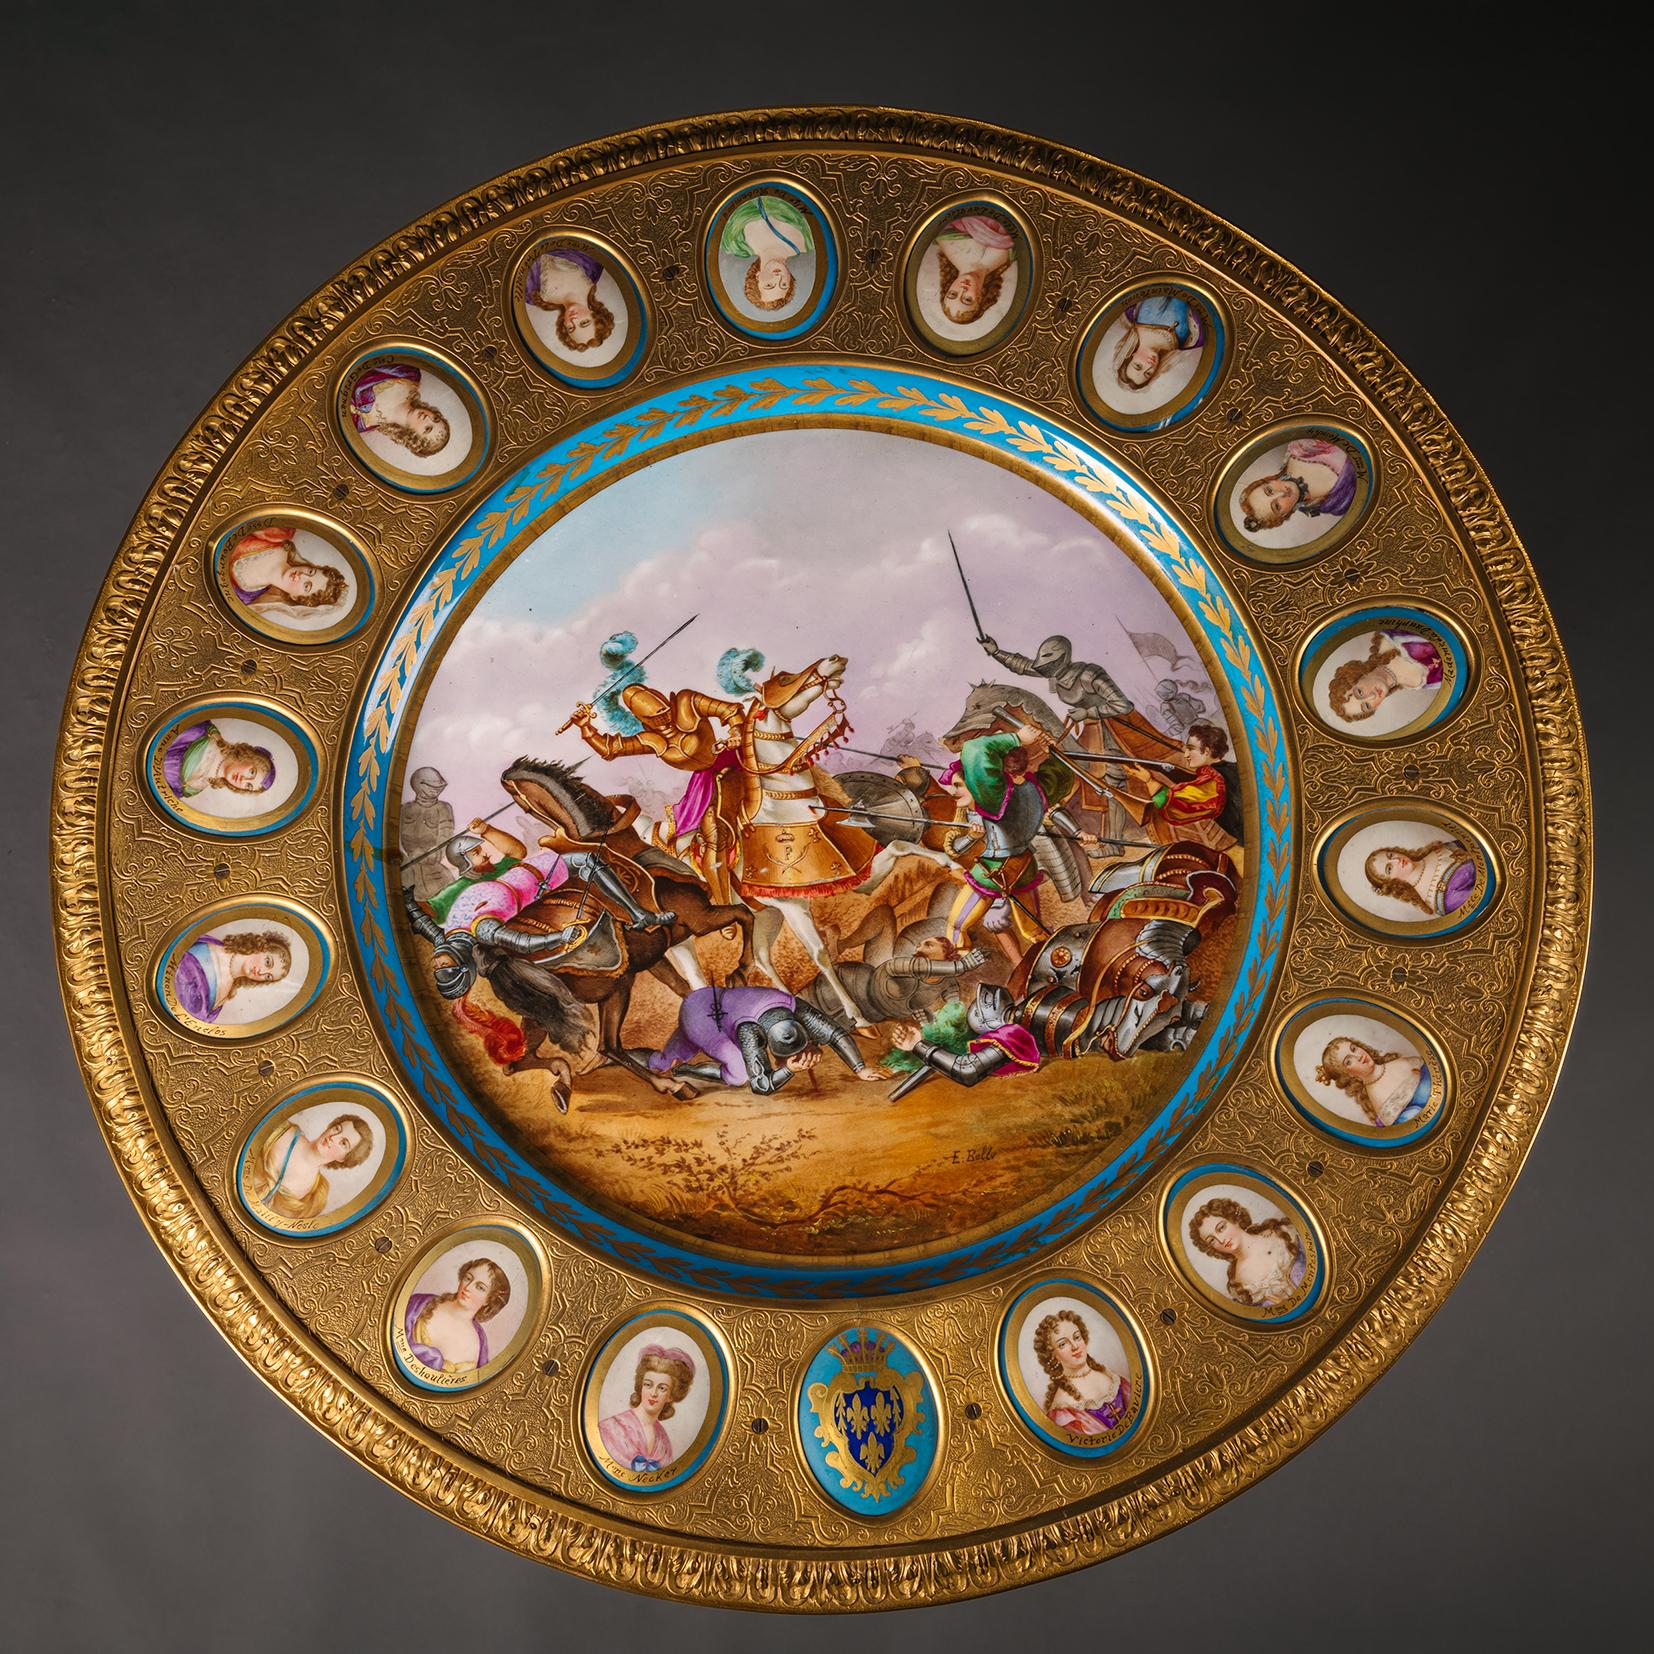 Table de centre ébonisée montée en porcelaine et bronze doré, de style Sèvres

La partie supérieure est ornée d'une plaque centrale à fond turquoise représentant François Ier (1494-1547) à la bataille de Pavie, signée 